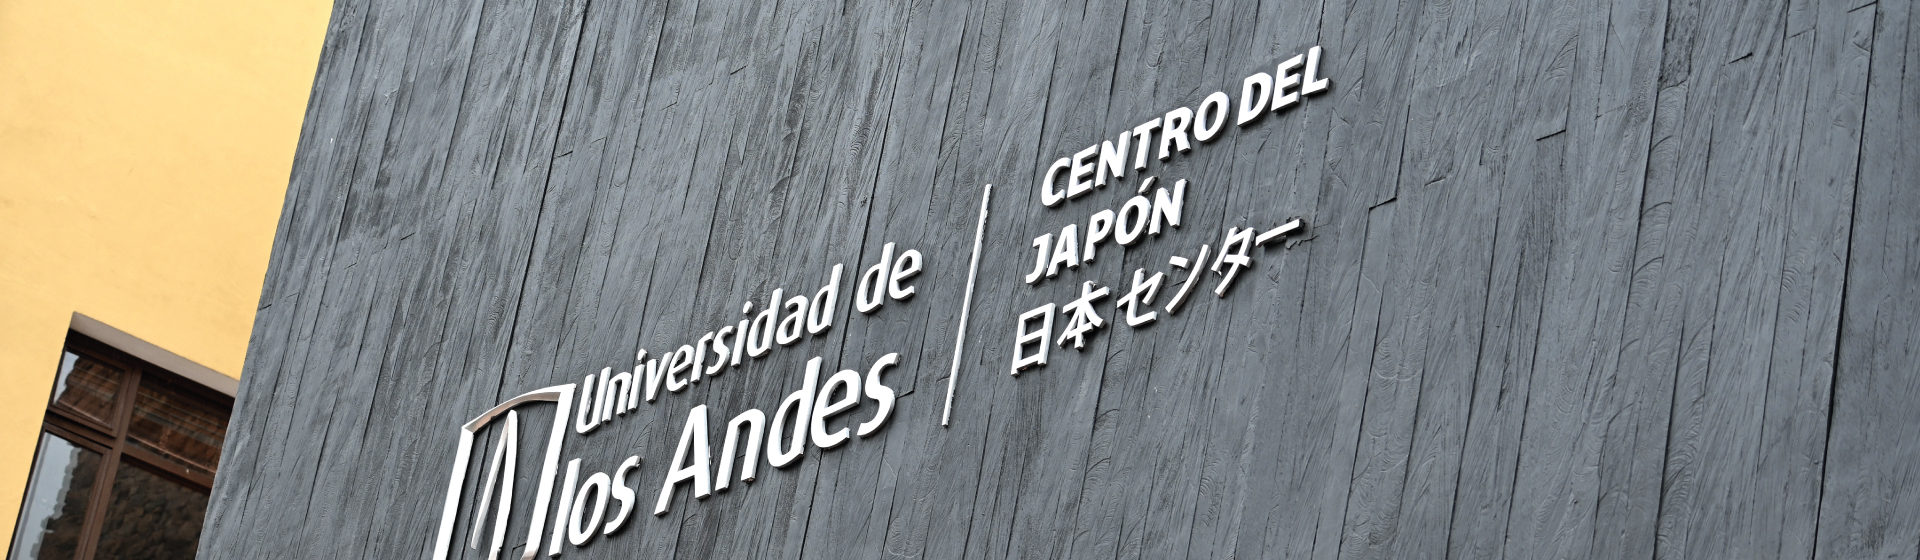 Quinto aniversario del Centro del Japón.